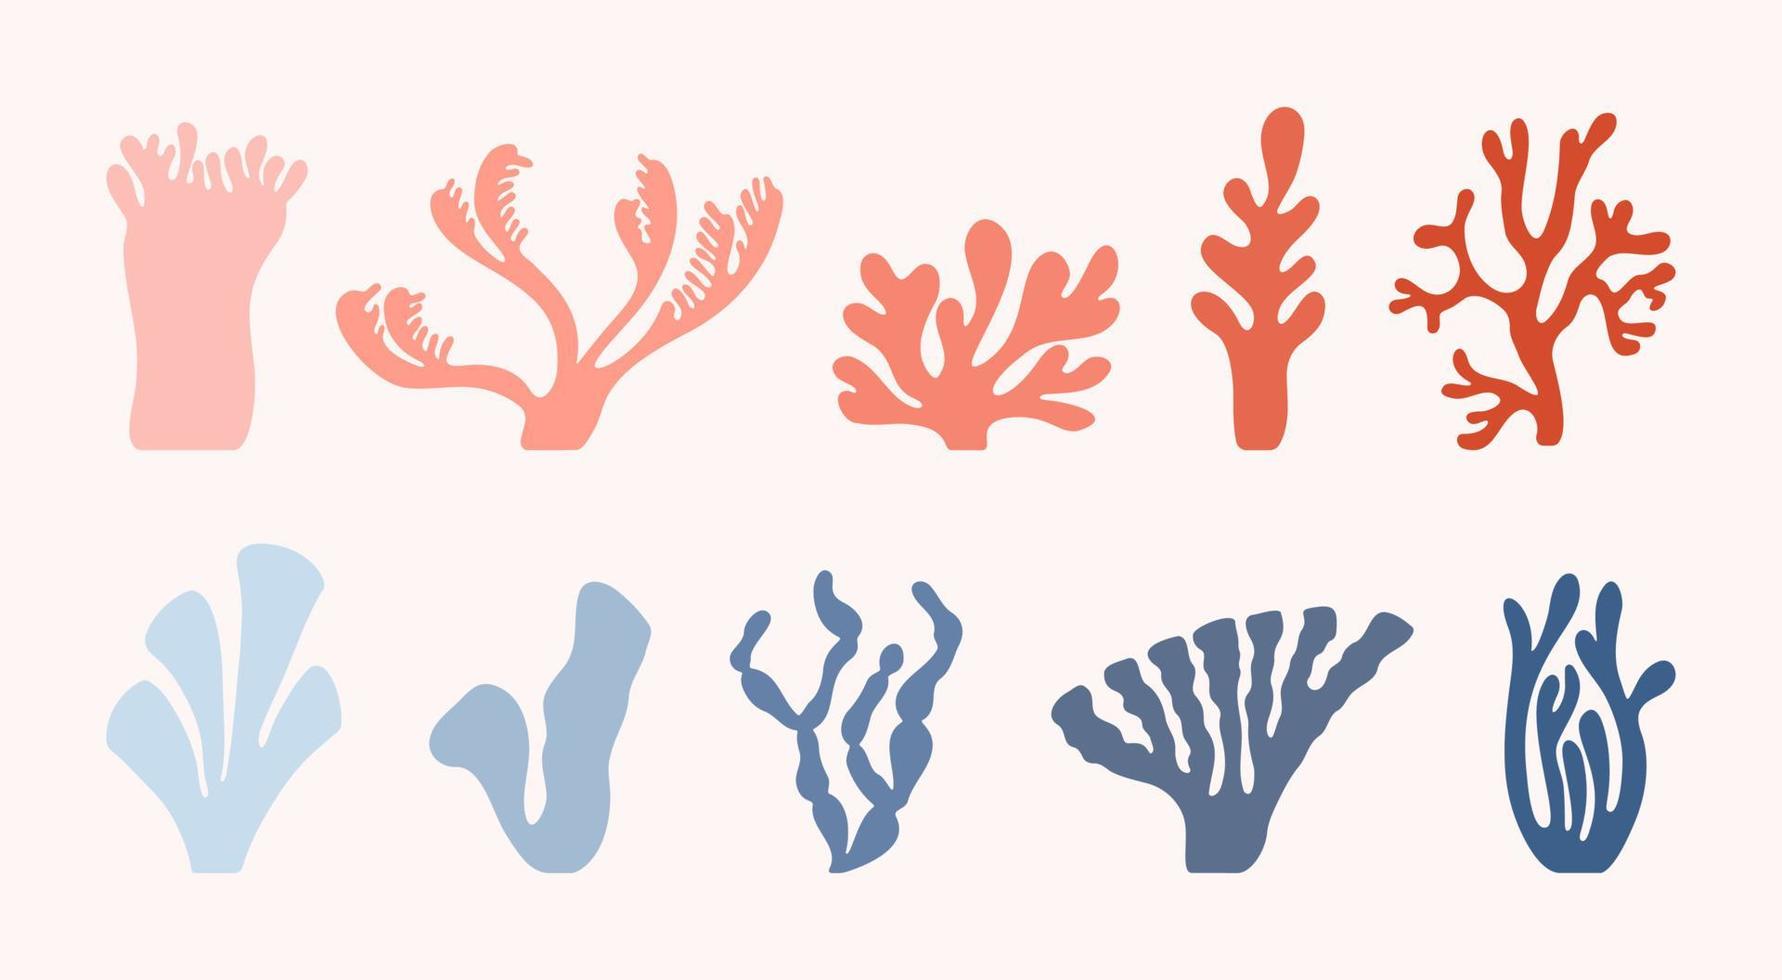 ensemble de dix coraux de mer abstraits dessinés dans le style henry matisse. vecteur